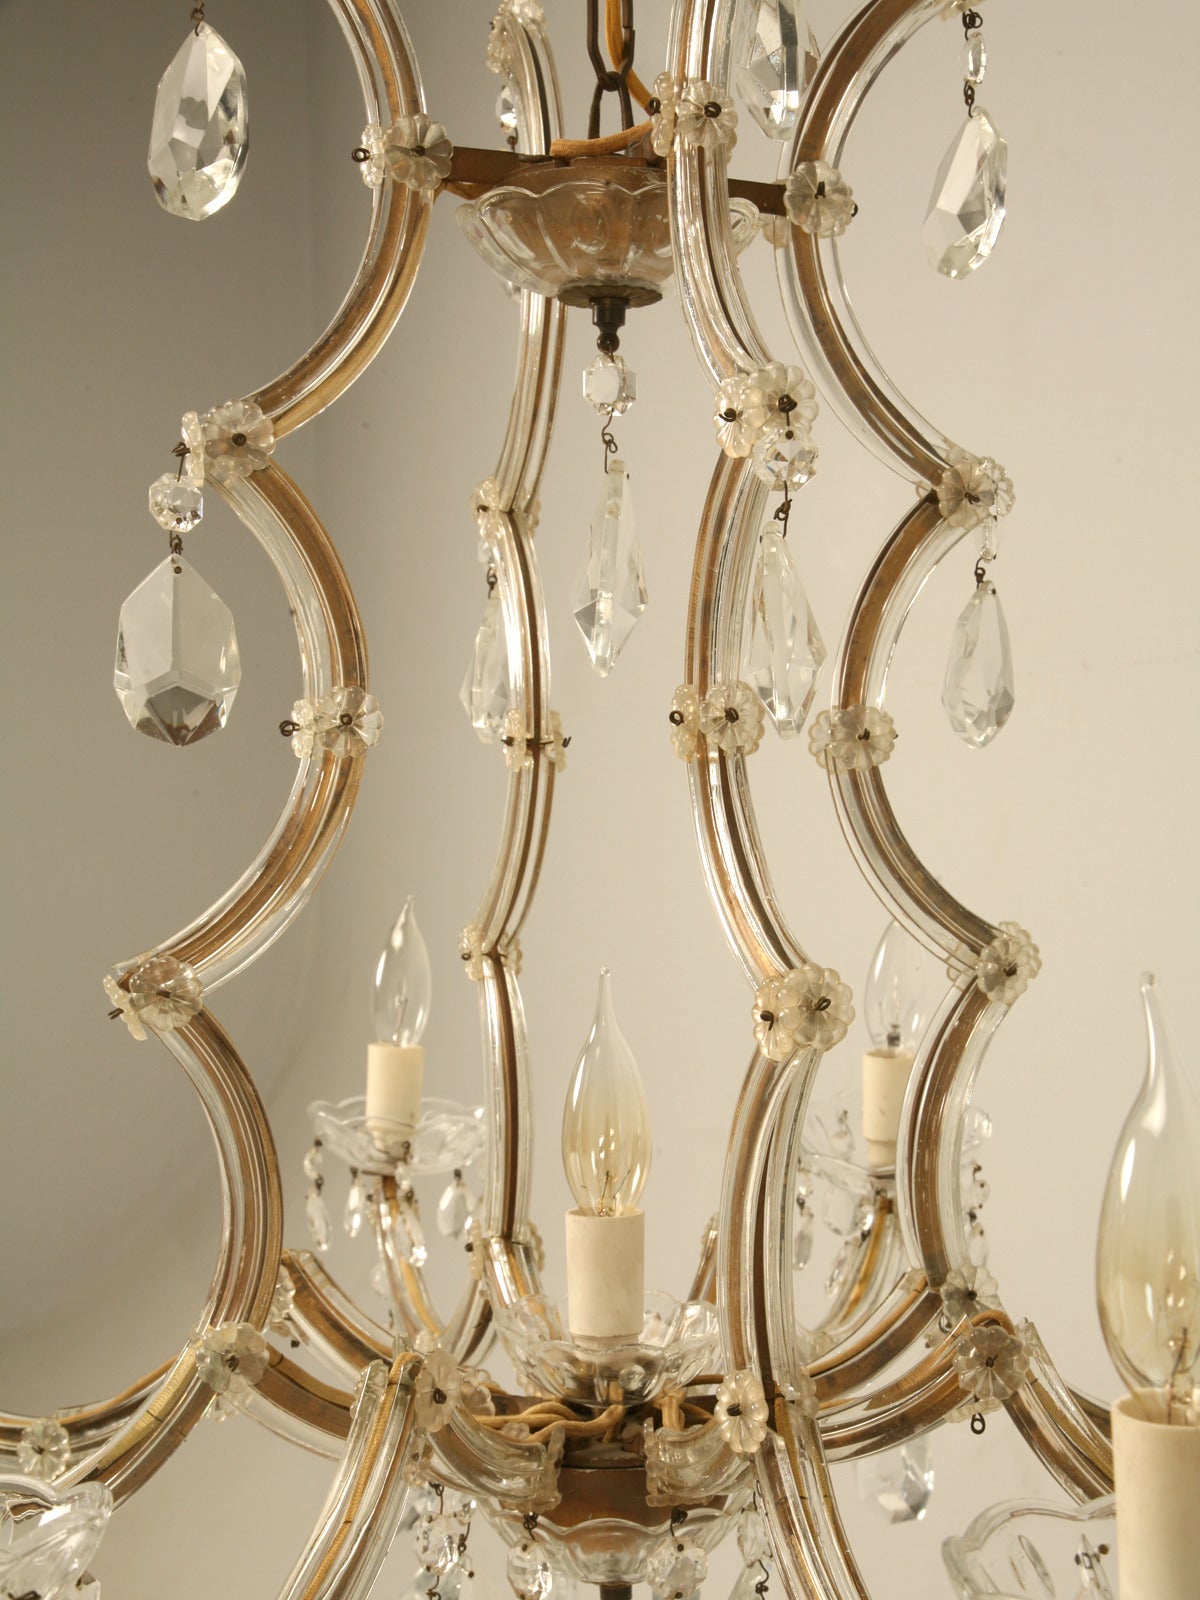 1930s chandeliers